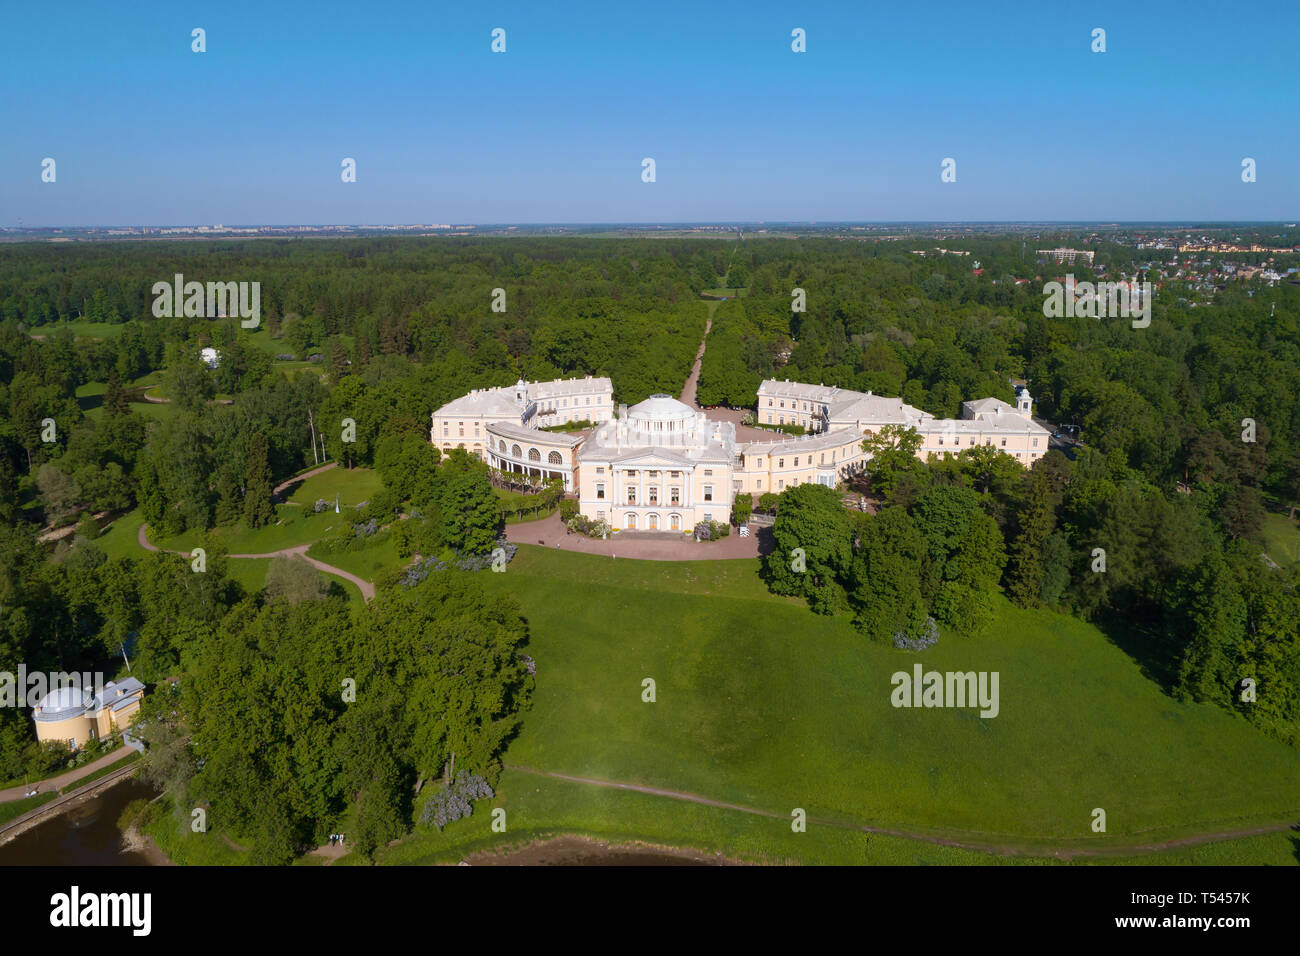 Le Palais de Pavlovsk dans un paysage d'été (Photographie aérienne). Les alentours de Saint-Pétersbourg, Russie Banque D'Images